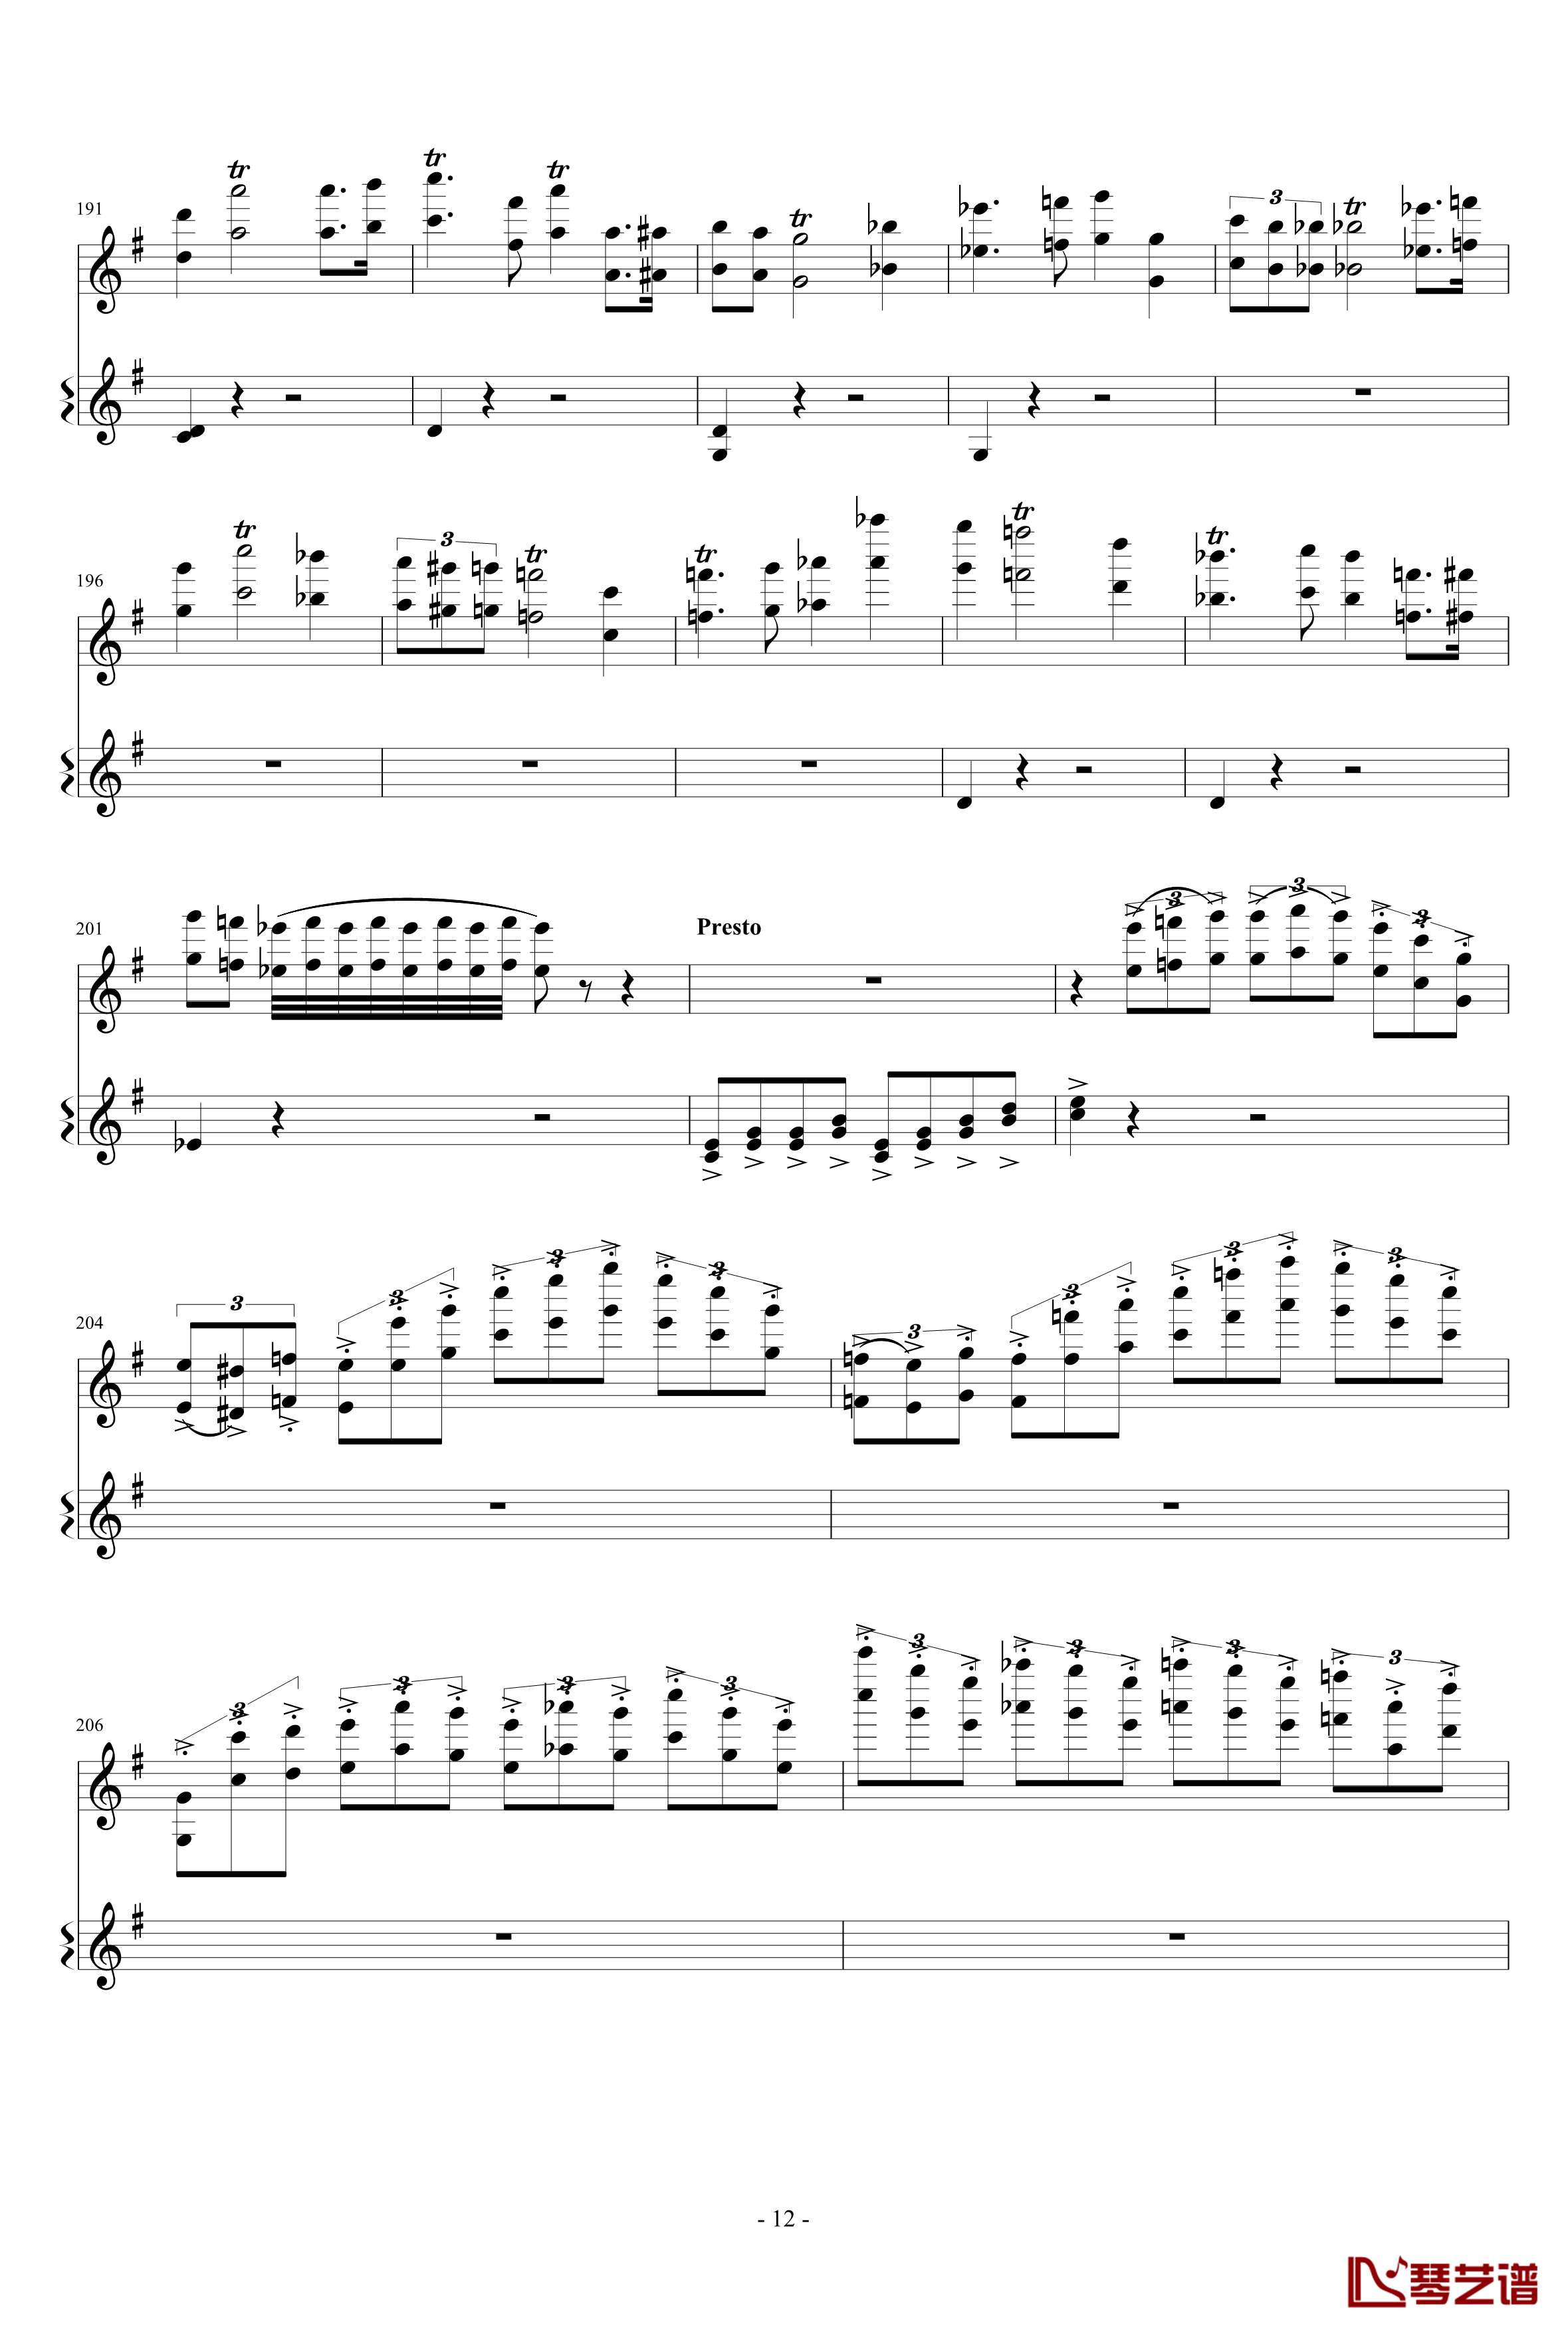 意大利国歌变奏曲钢琴谱-只修改了一个音-DXF12